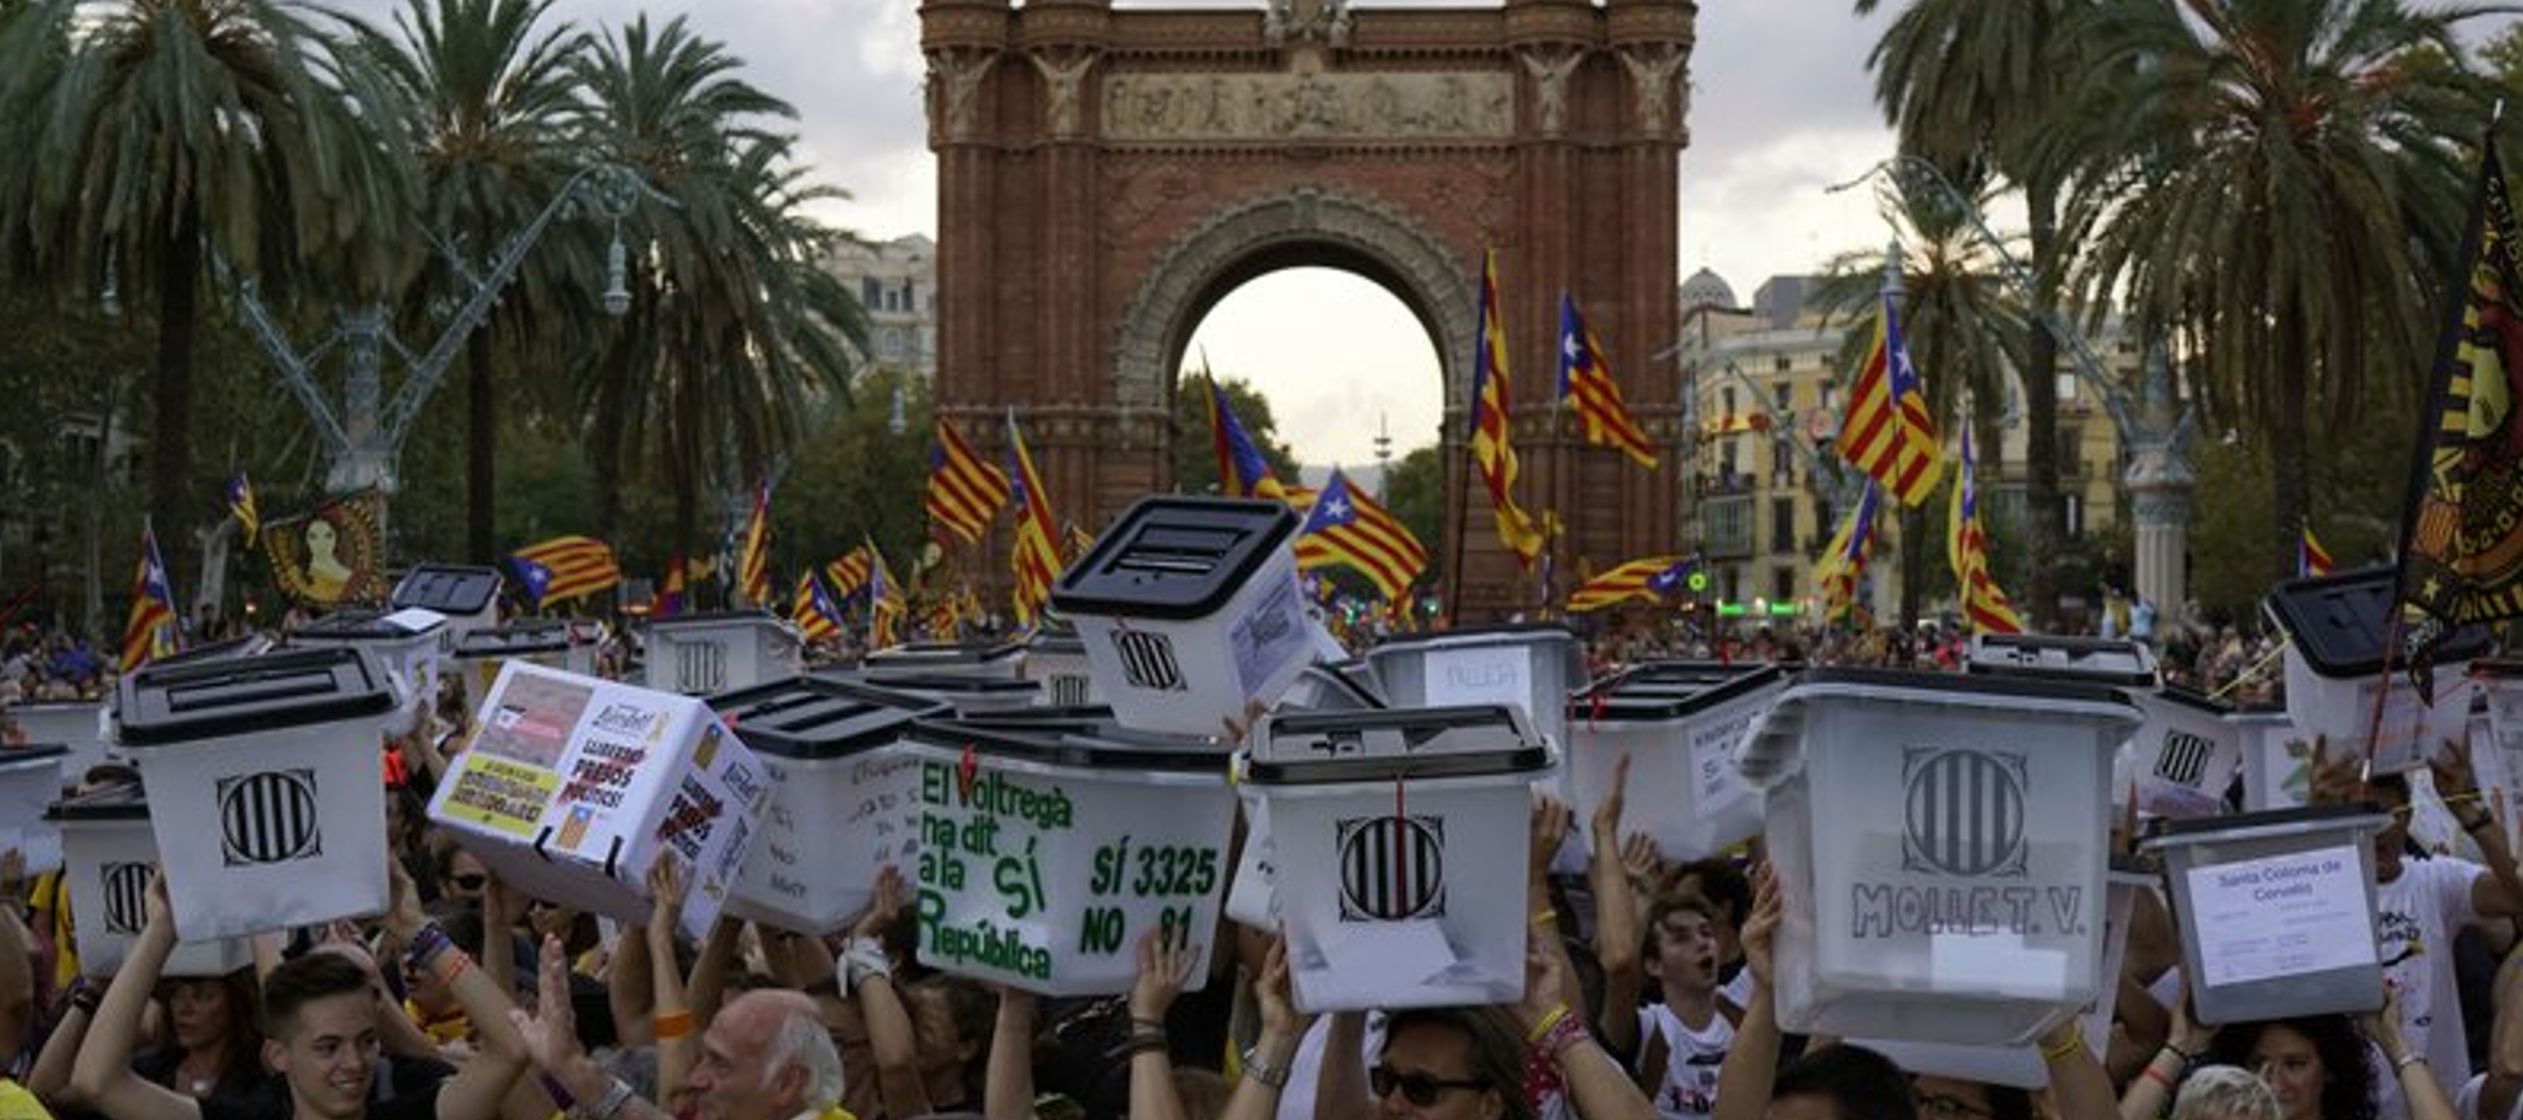 El primer aniversario estuvo marcado por un fracturado movimiento por la independencia catalana, en...